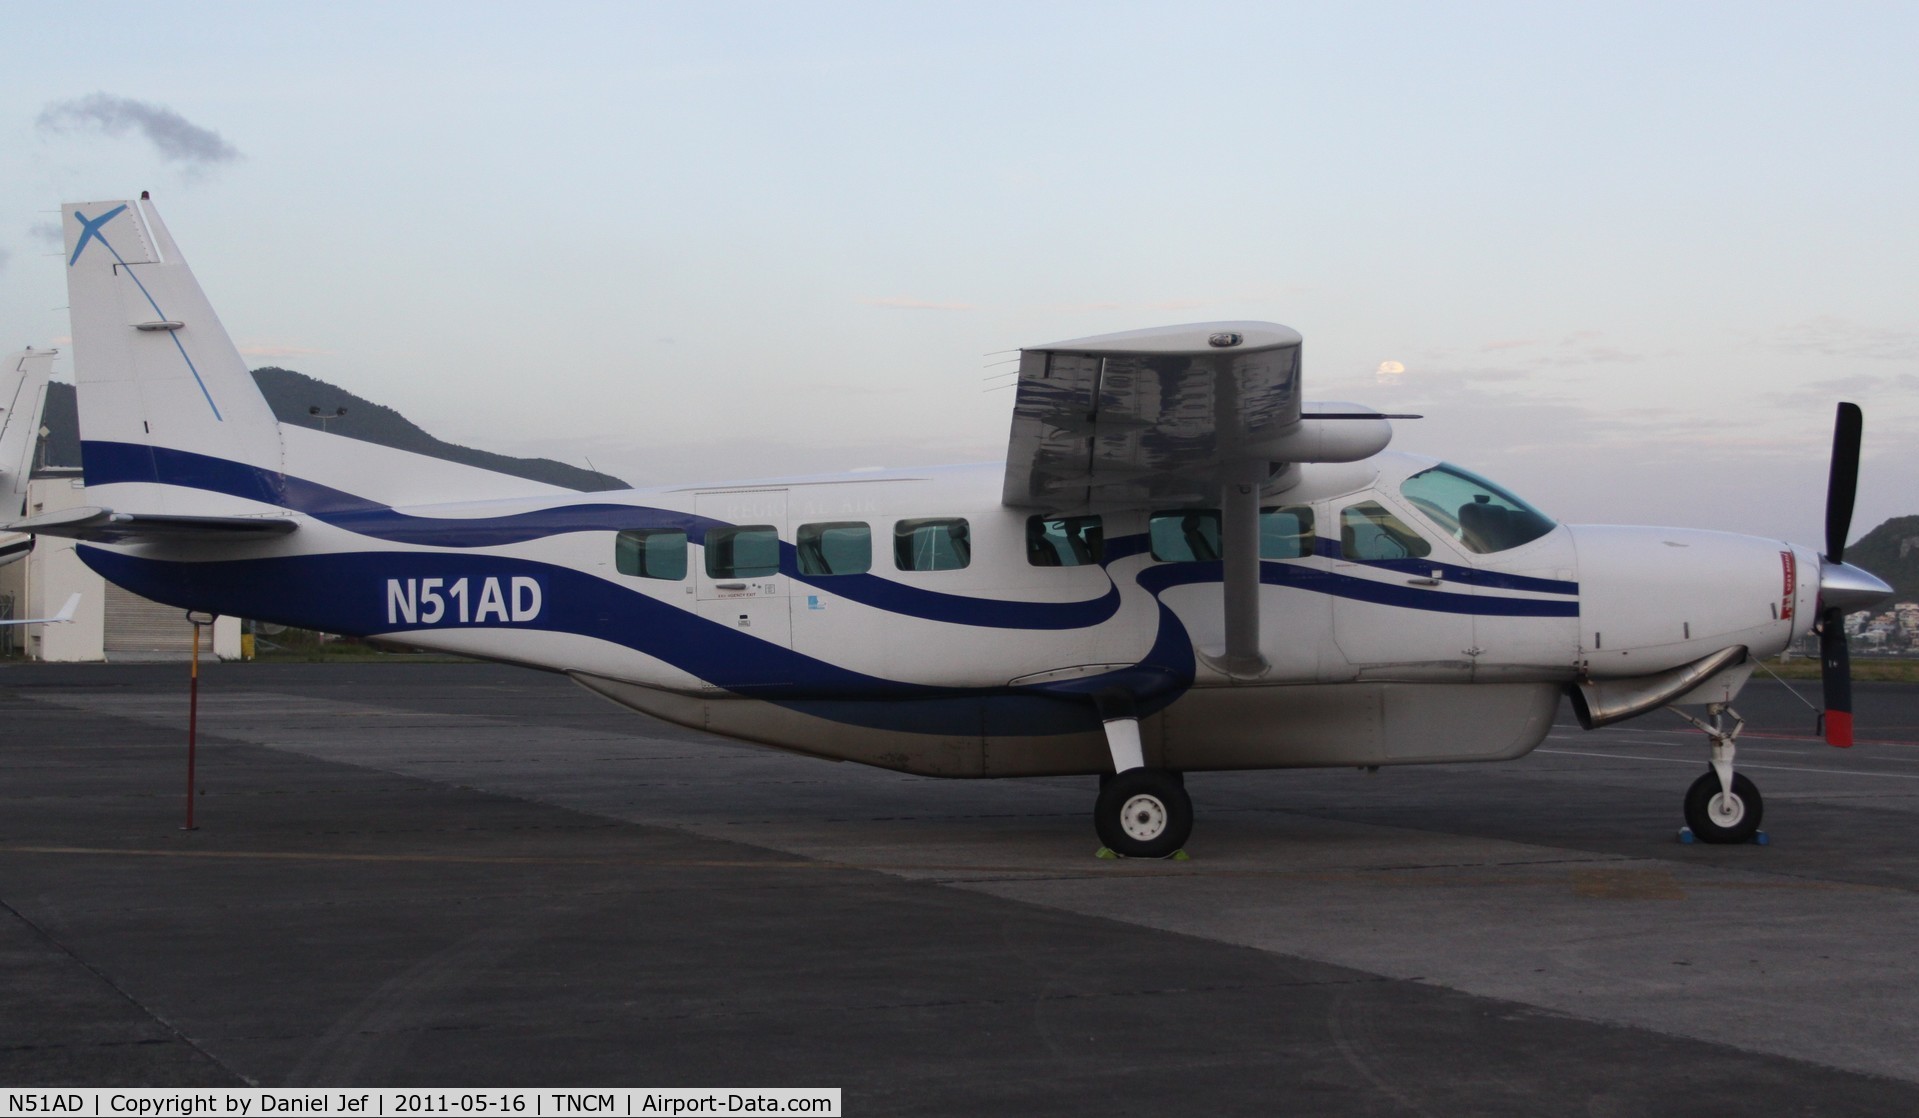 N51AD, 2000 Cessna 208B Grand Caravan C/N 208B0841, N51AD at TNCM